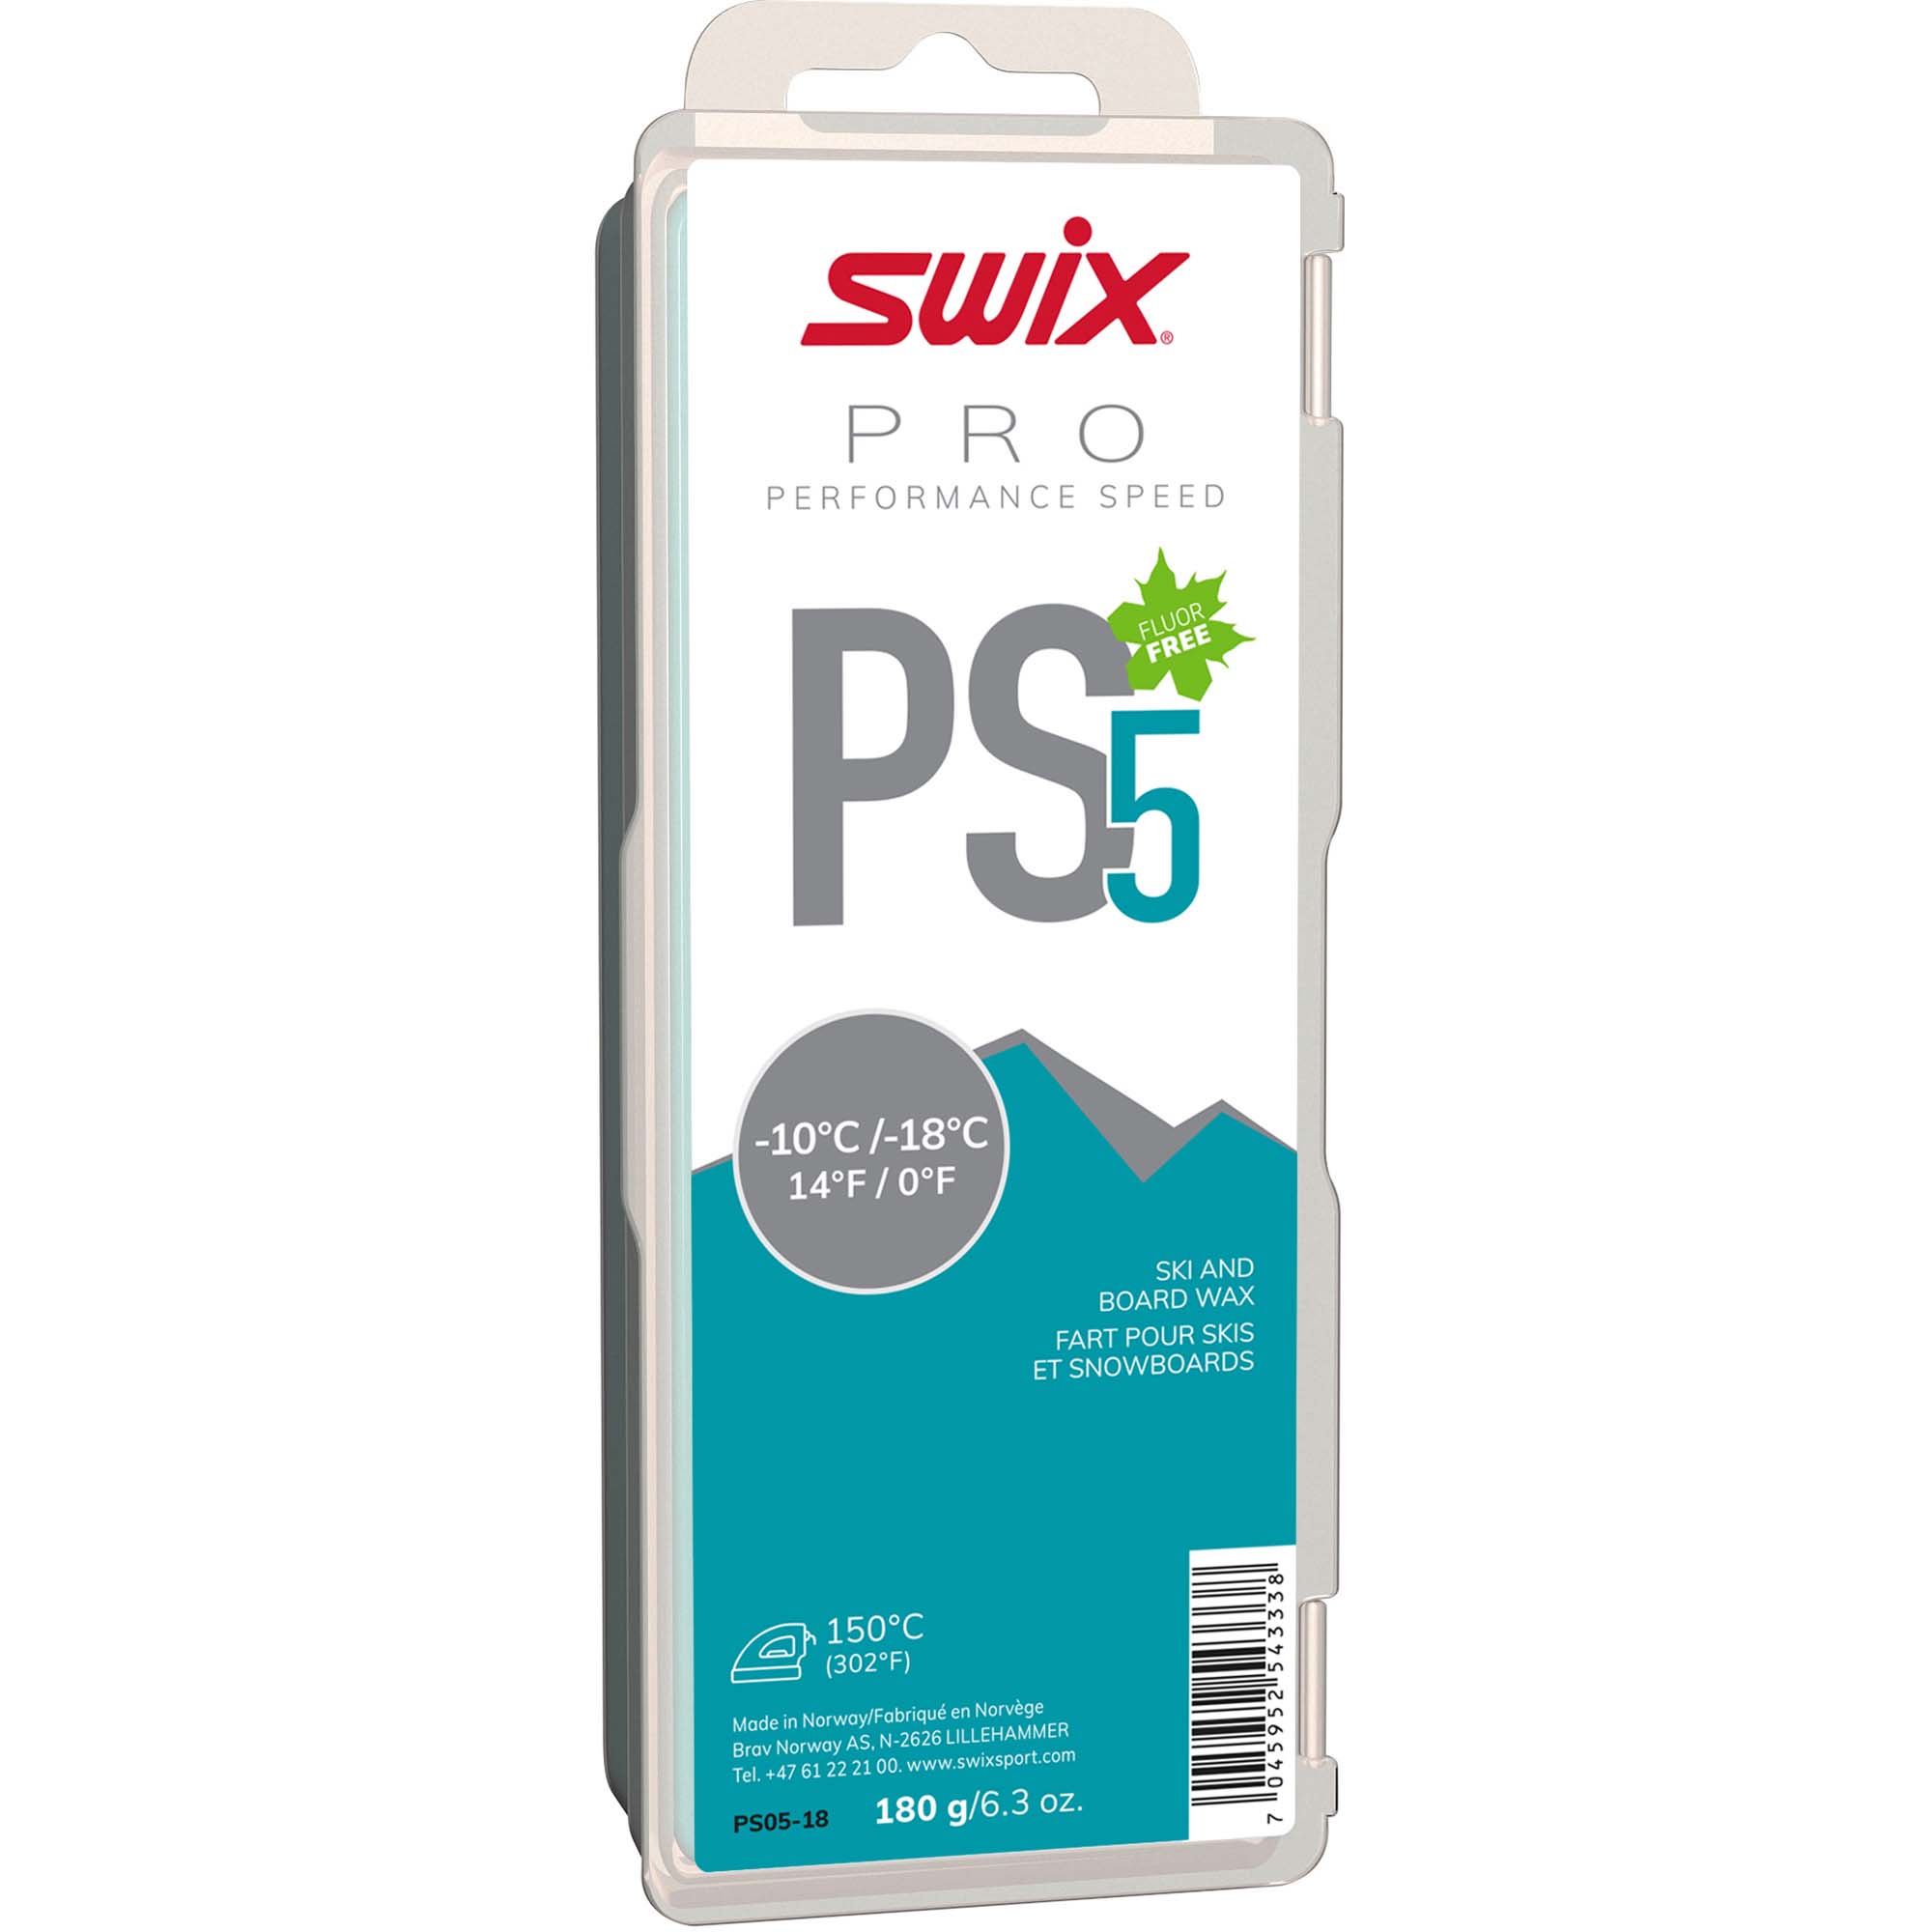 Skluzný vosk Swix Performance Speed, PS5 tyrkysový, -10°C/-18°C,180g